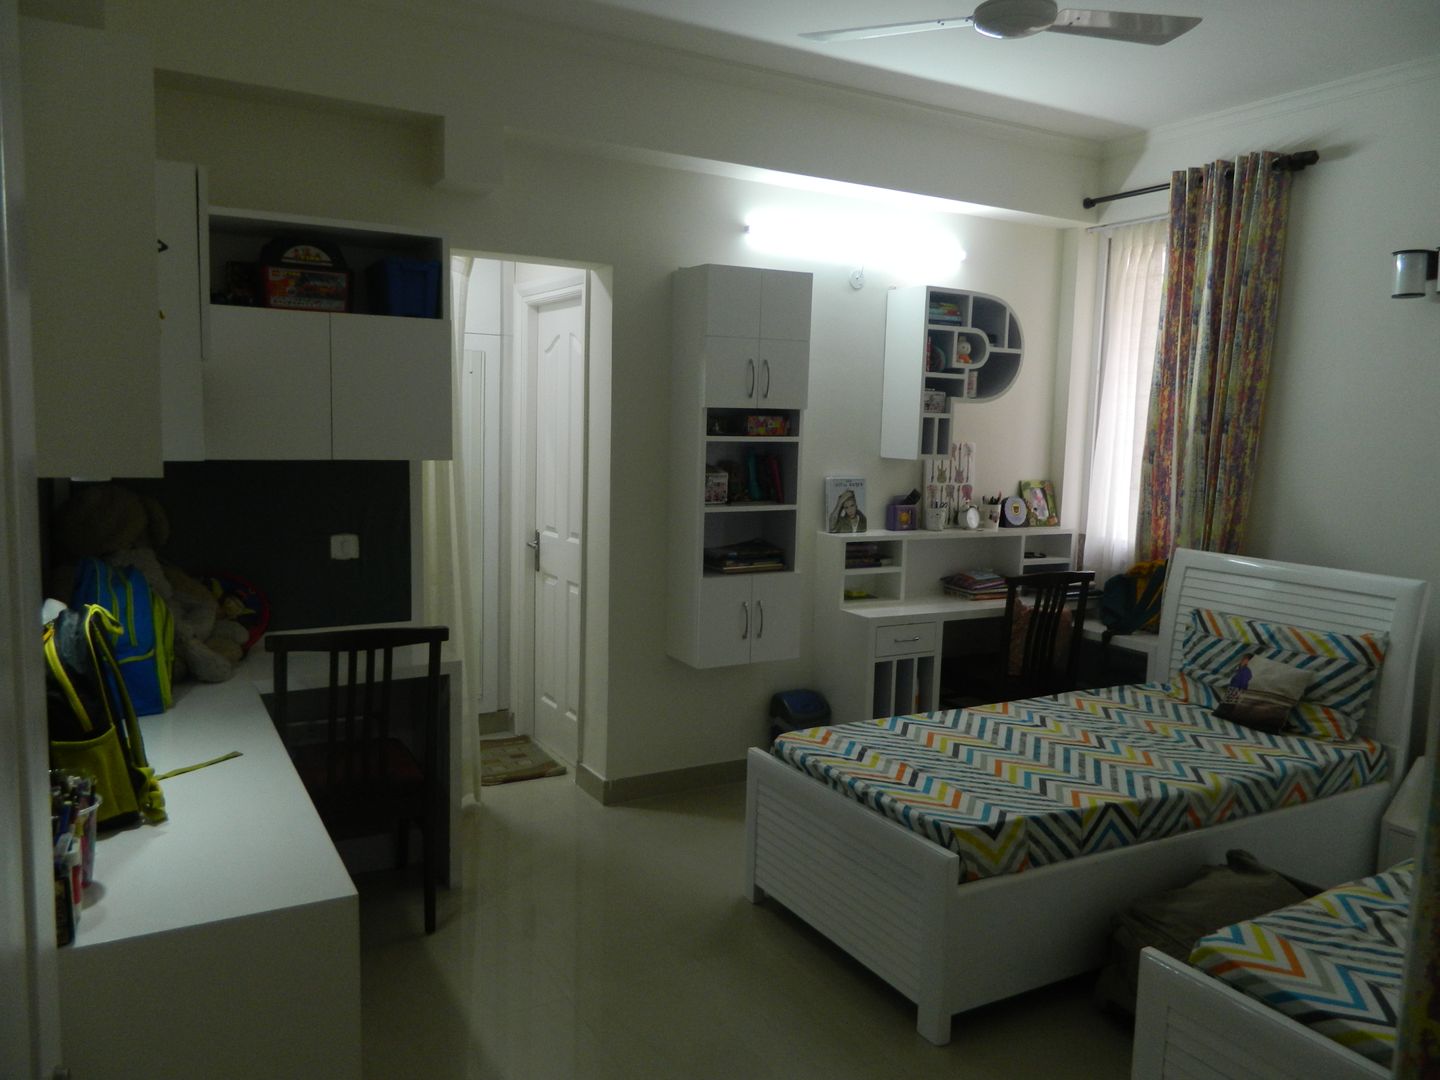 Kitchen & Interiors, Sector 46 Noida, hearth n home hearth n home Habitaciones pequeñas